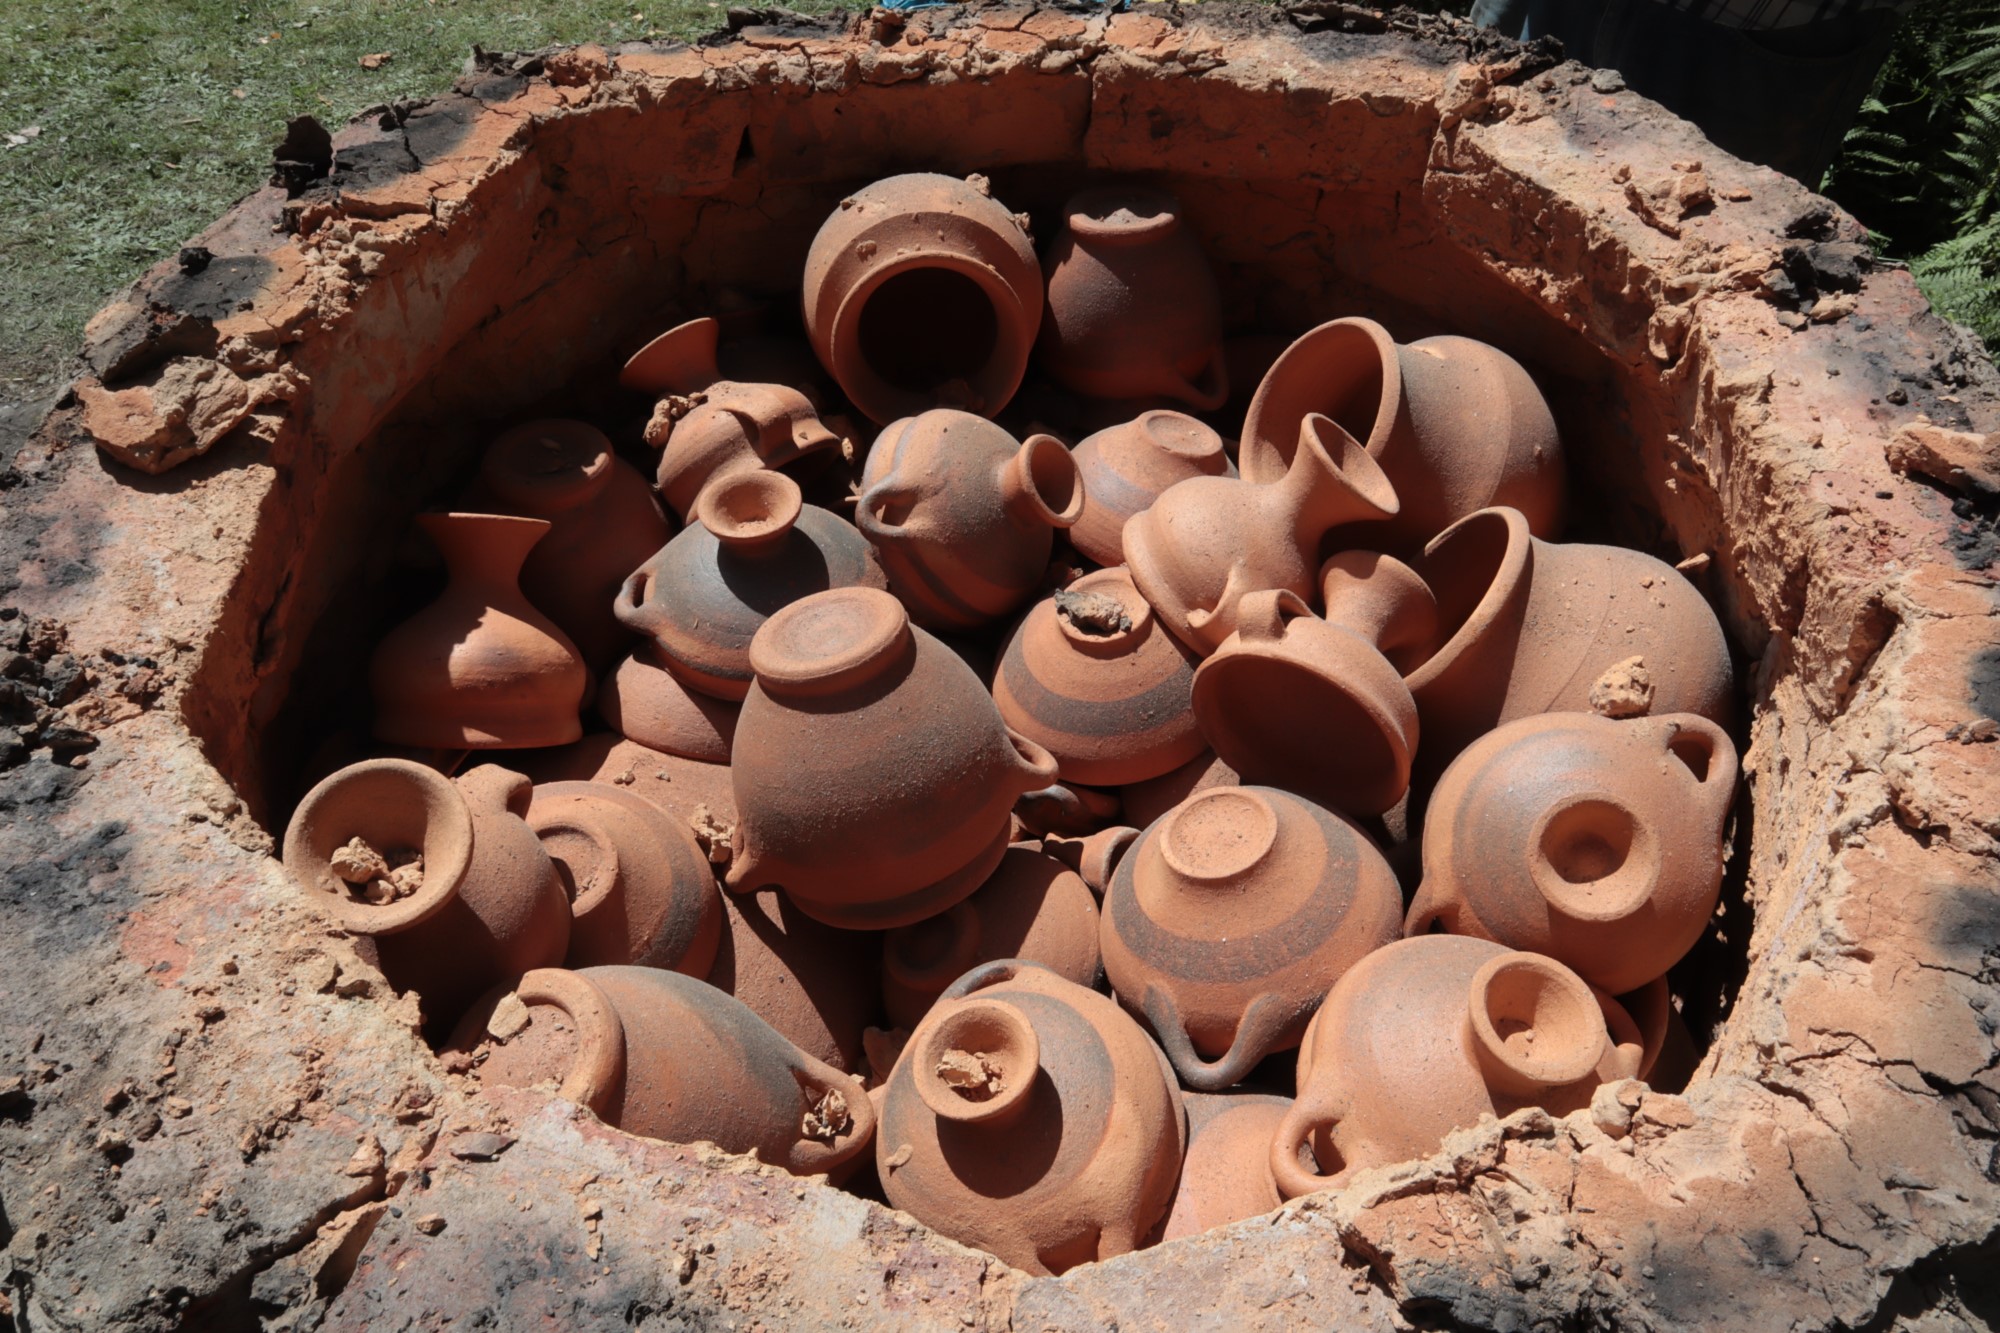 Agora Athena Volum 5 Ceramica Romana, PDF, Pottery